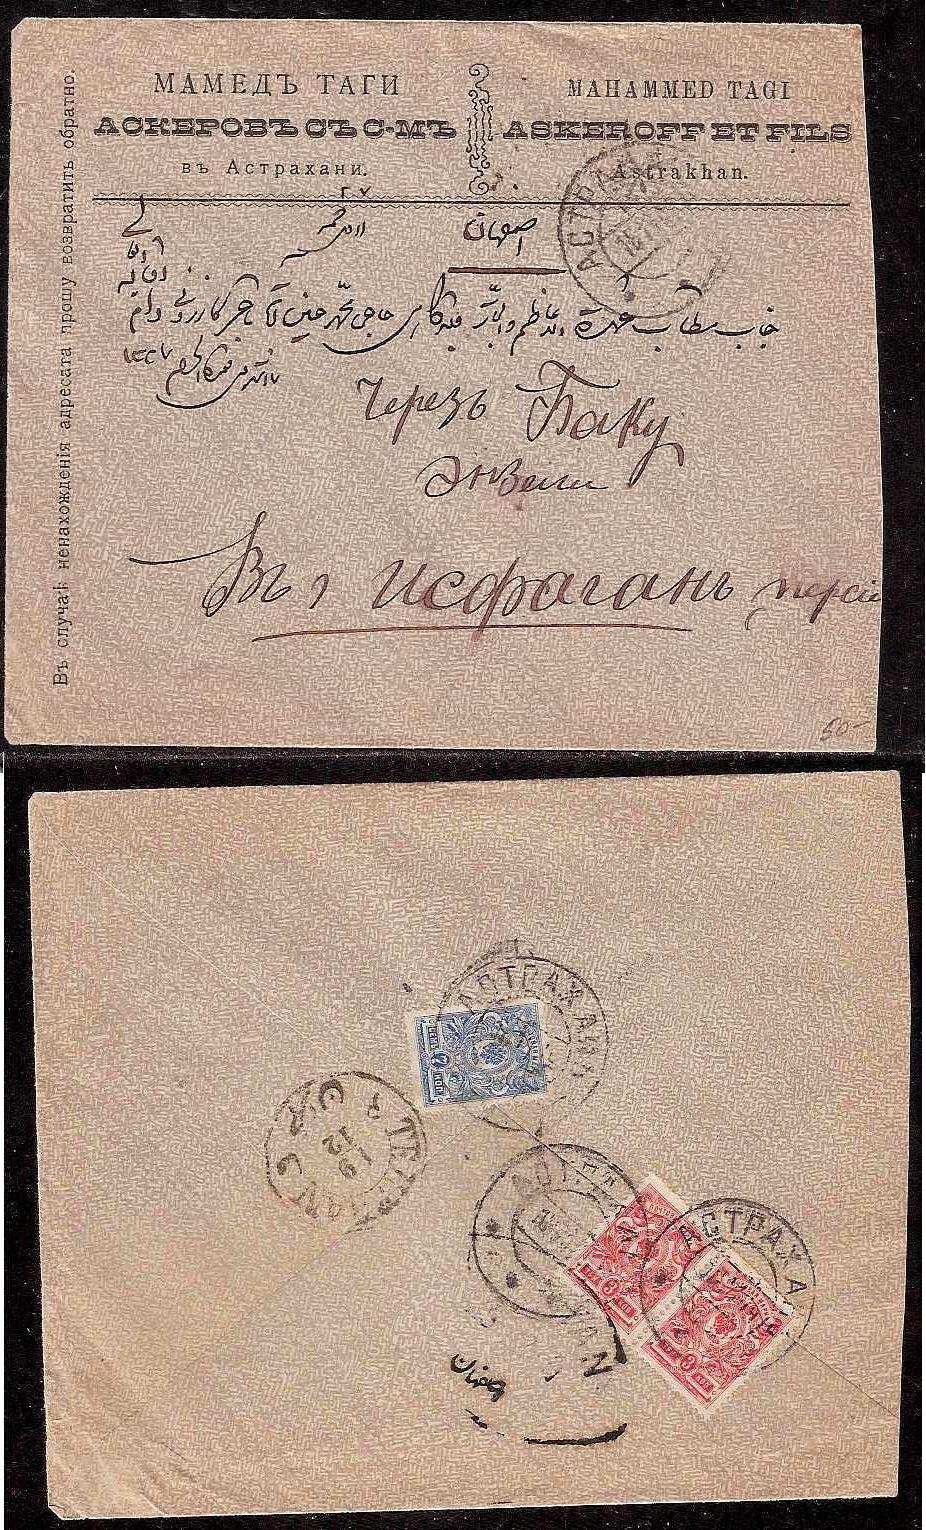 Russia Postal History - Gubernia Astrakhan gubernia Scott 11912 